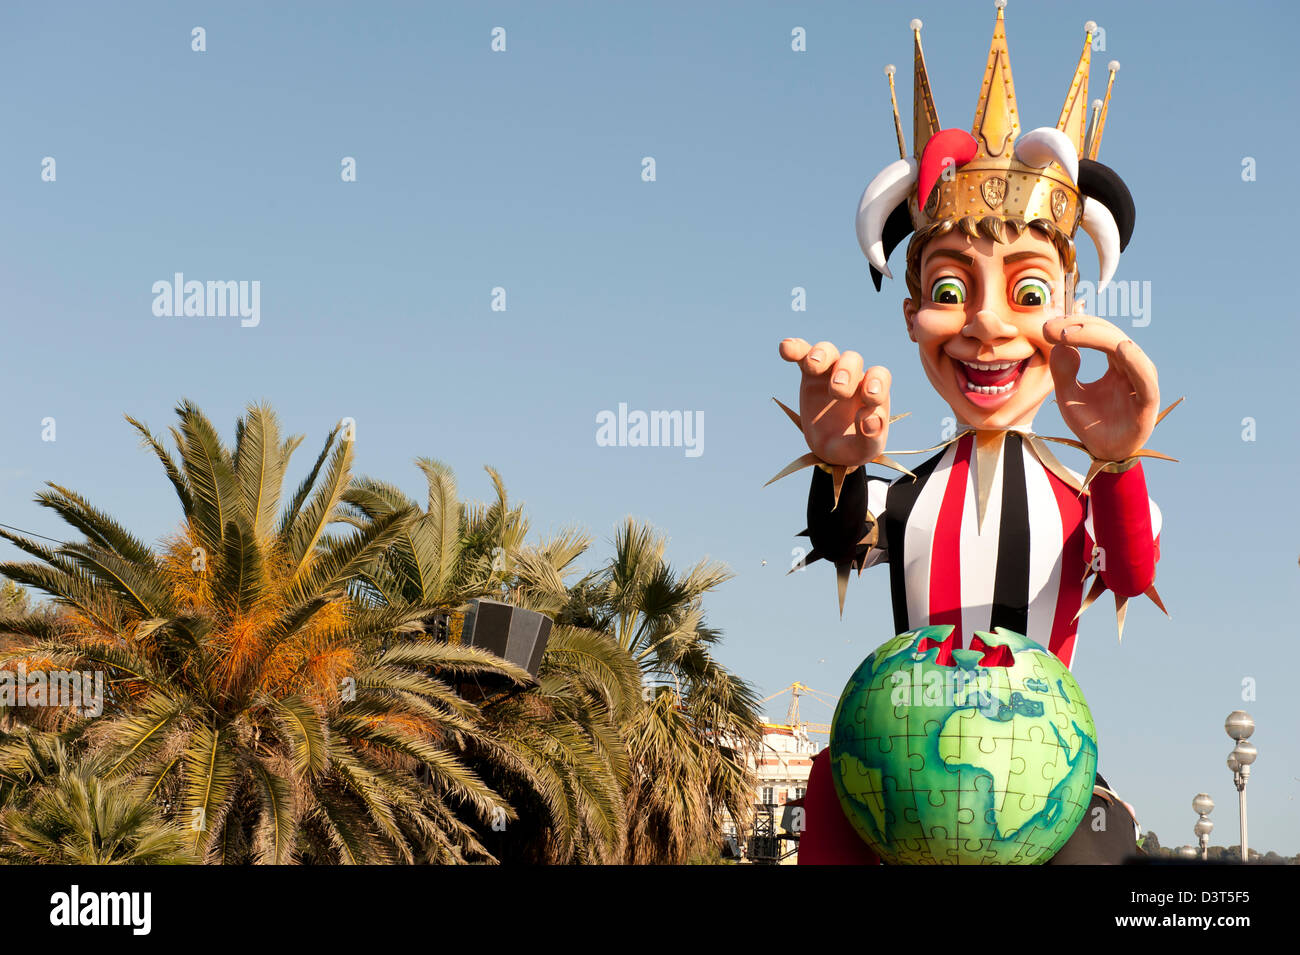 Défilé de carnaval sur flotteur représentant le roi du Carnaval de Nice France au milieu des palmiers Banque D'Images